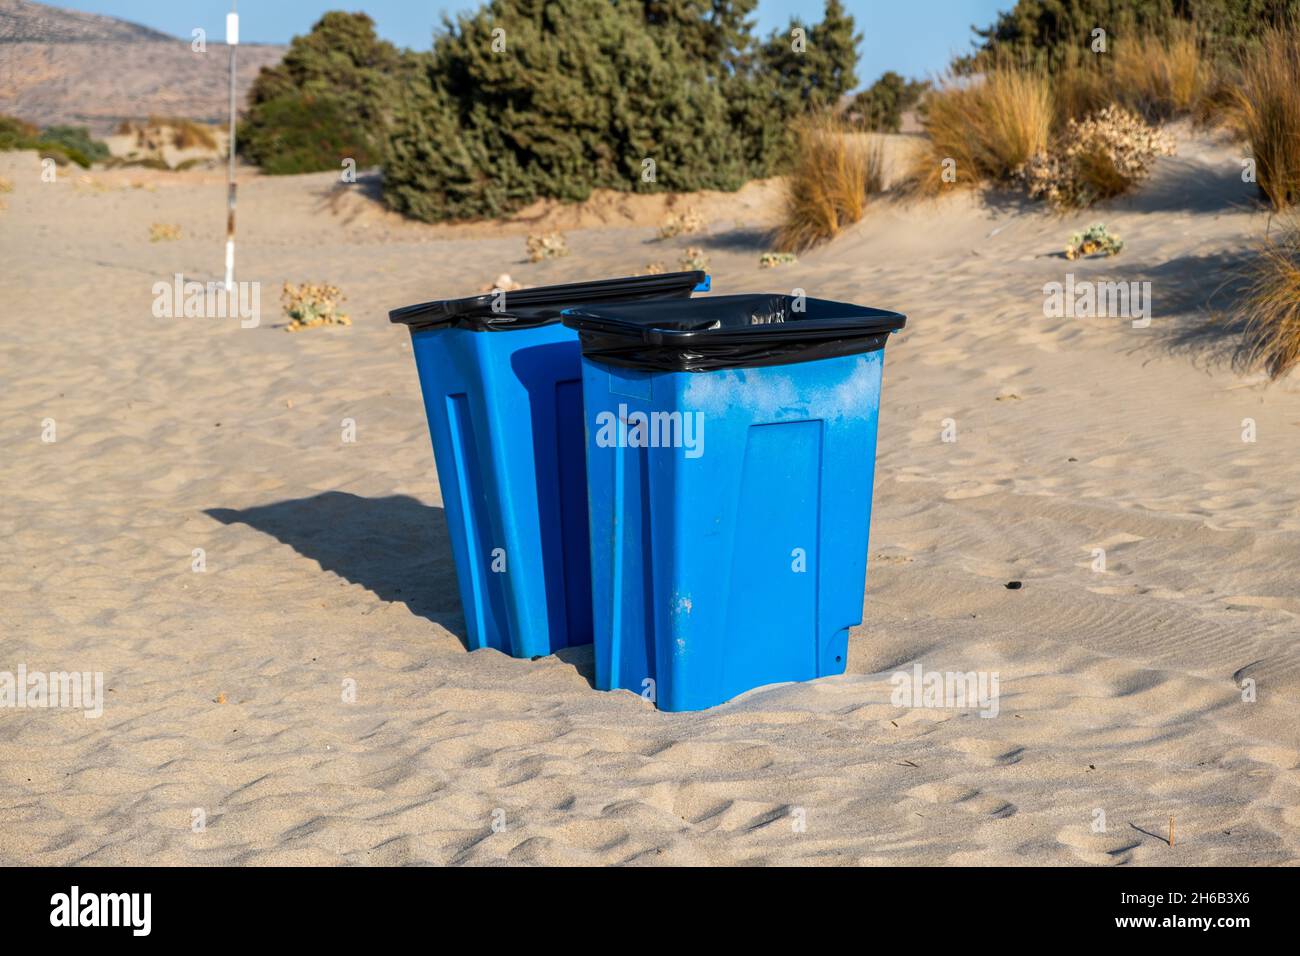 Maintenez le concept de sensibilisation à l'environnement de la plage propre.De grandes poubelles bleues au milieu de la côte sablonneuse.Poubelles bennes bennes bennes bennes de bennes sur le san doux Banque D'Images